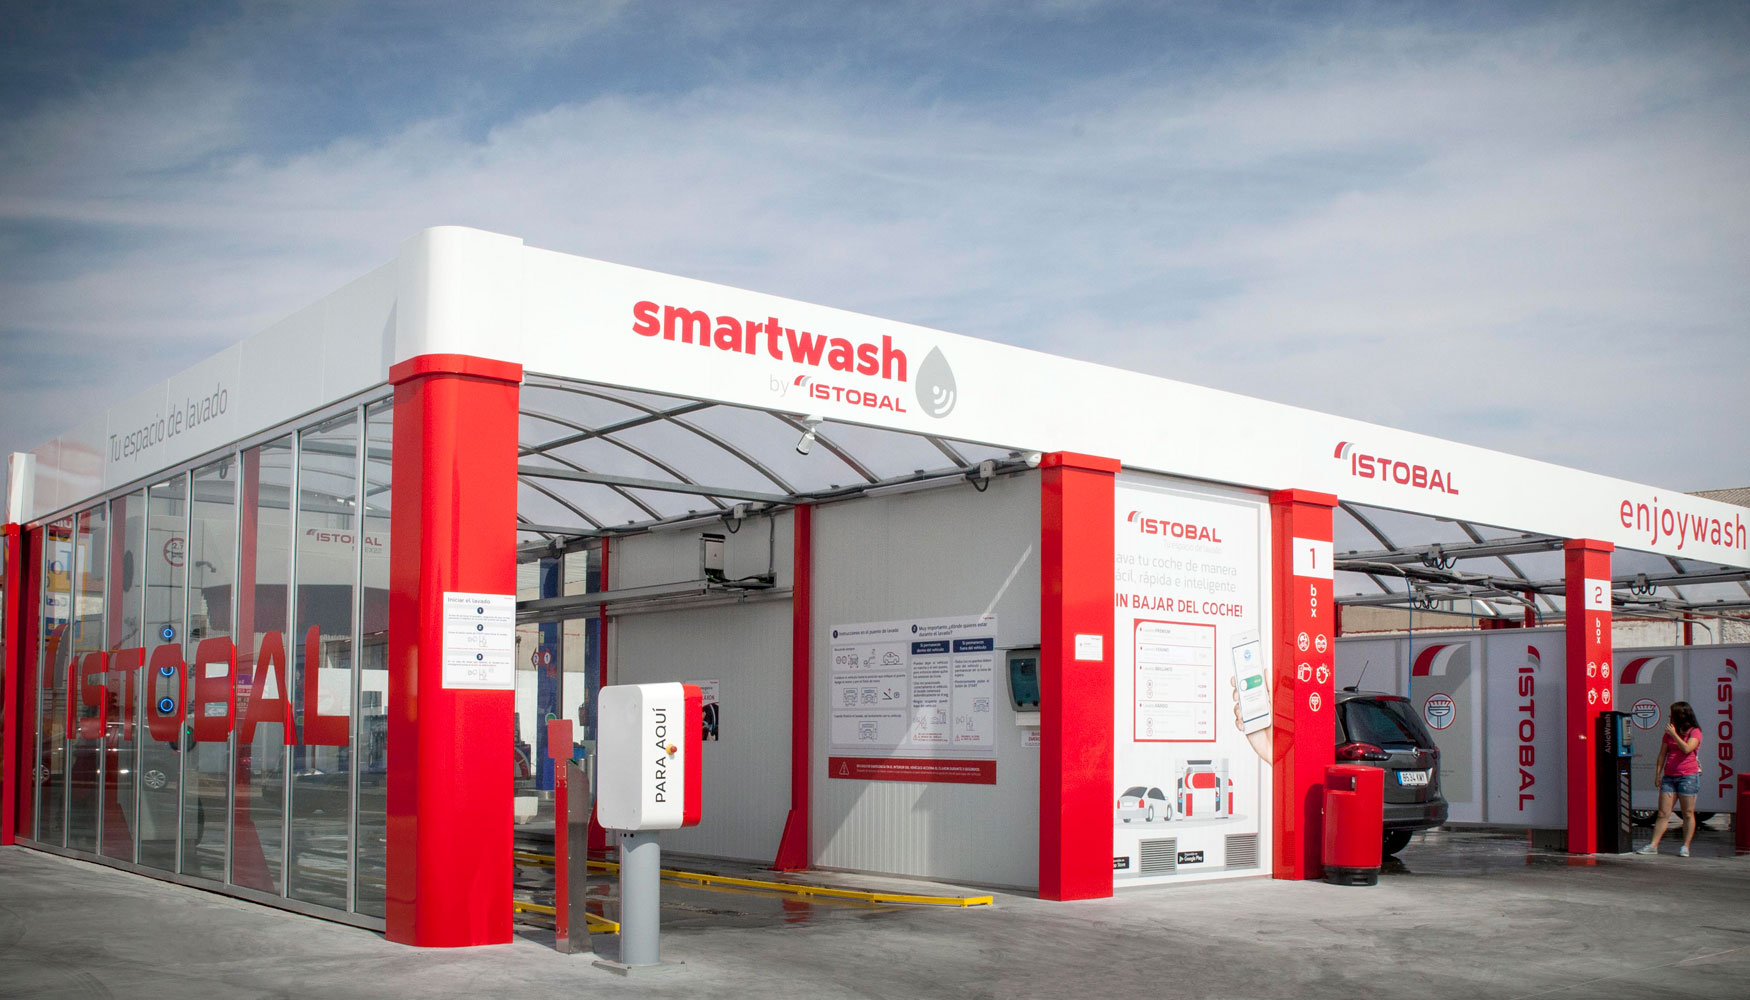 Basada en IoT y Big Data, Smartwash permite llevar a cabo una gestin digital de la instalacin de lavado